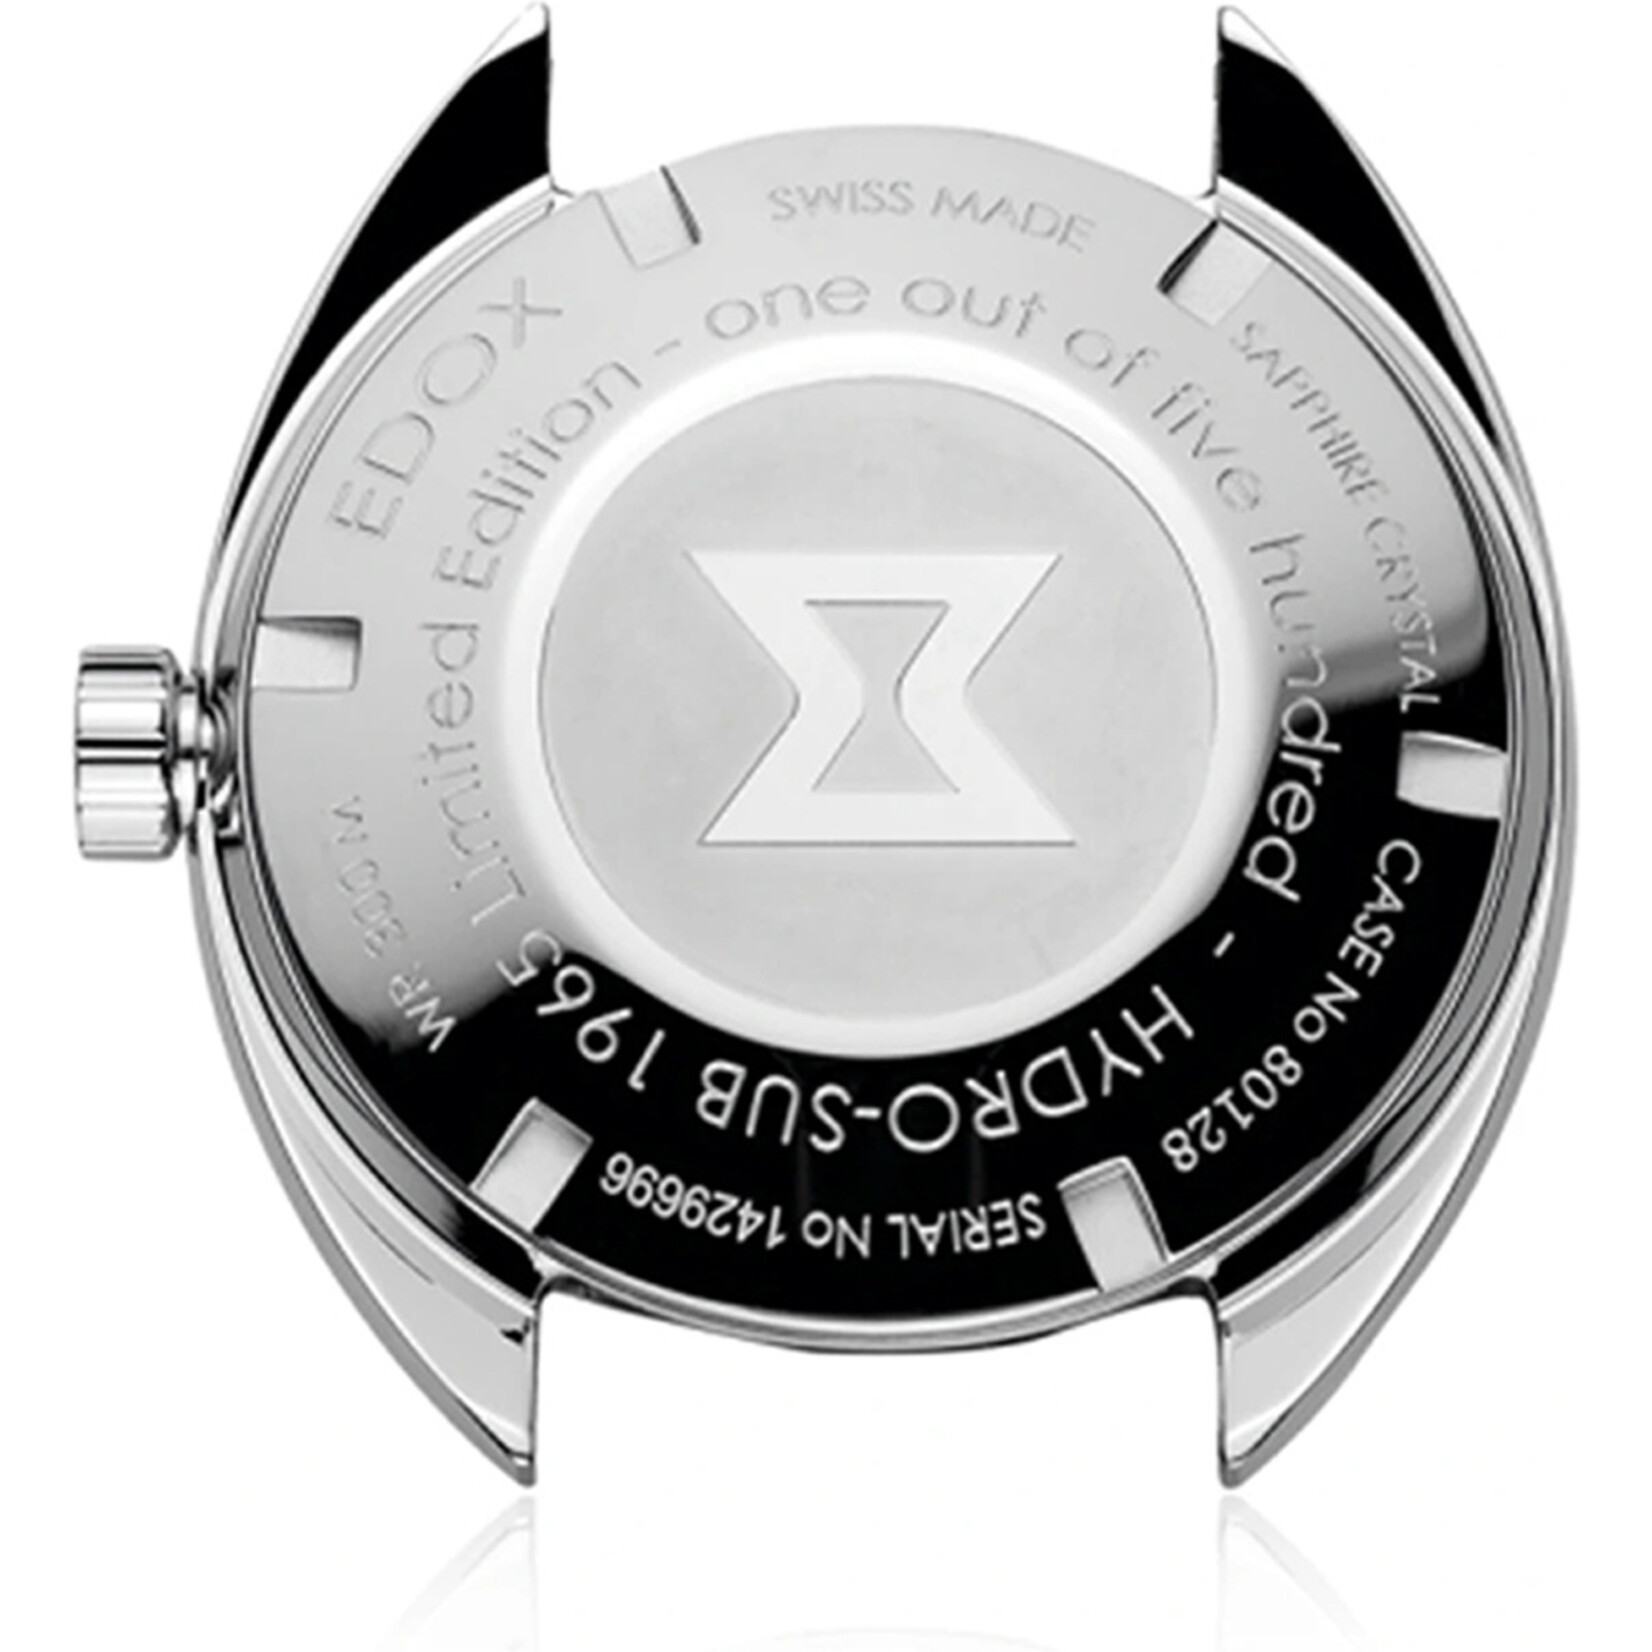 Edox Edox heren horloge limited edition 80128-3bum-buio Hydro-Sub